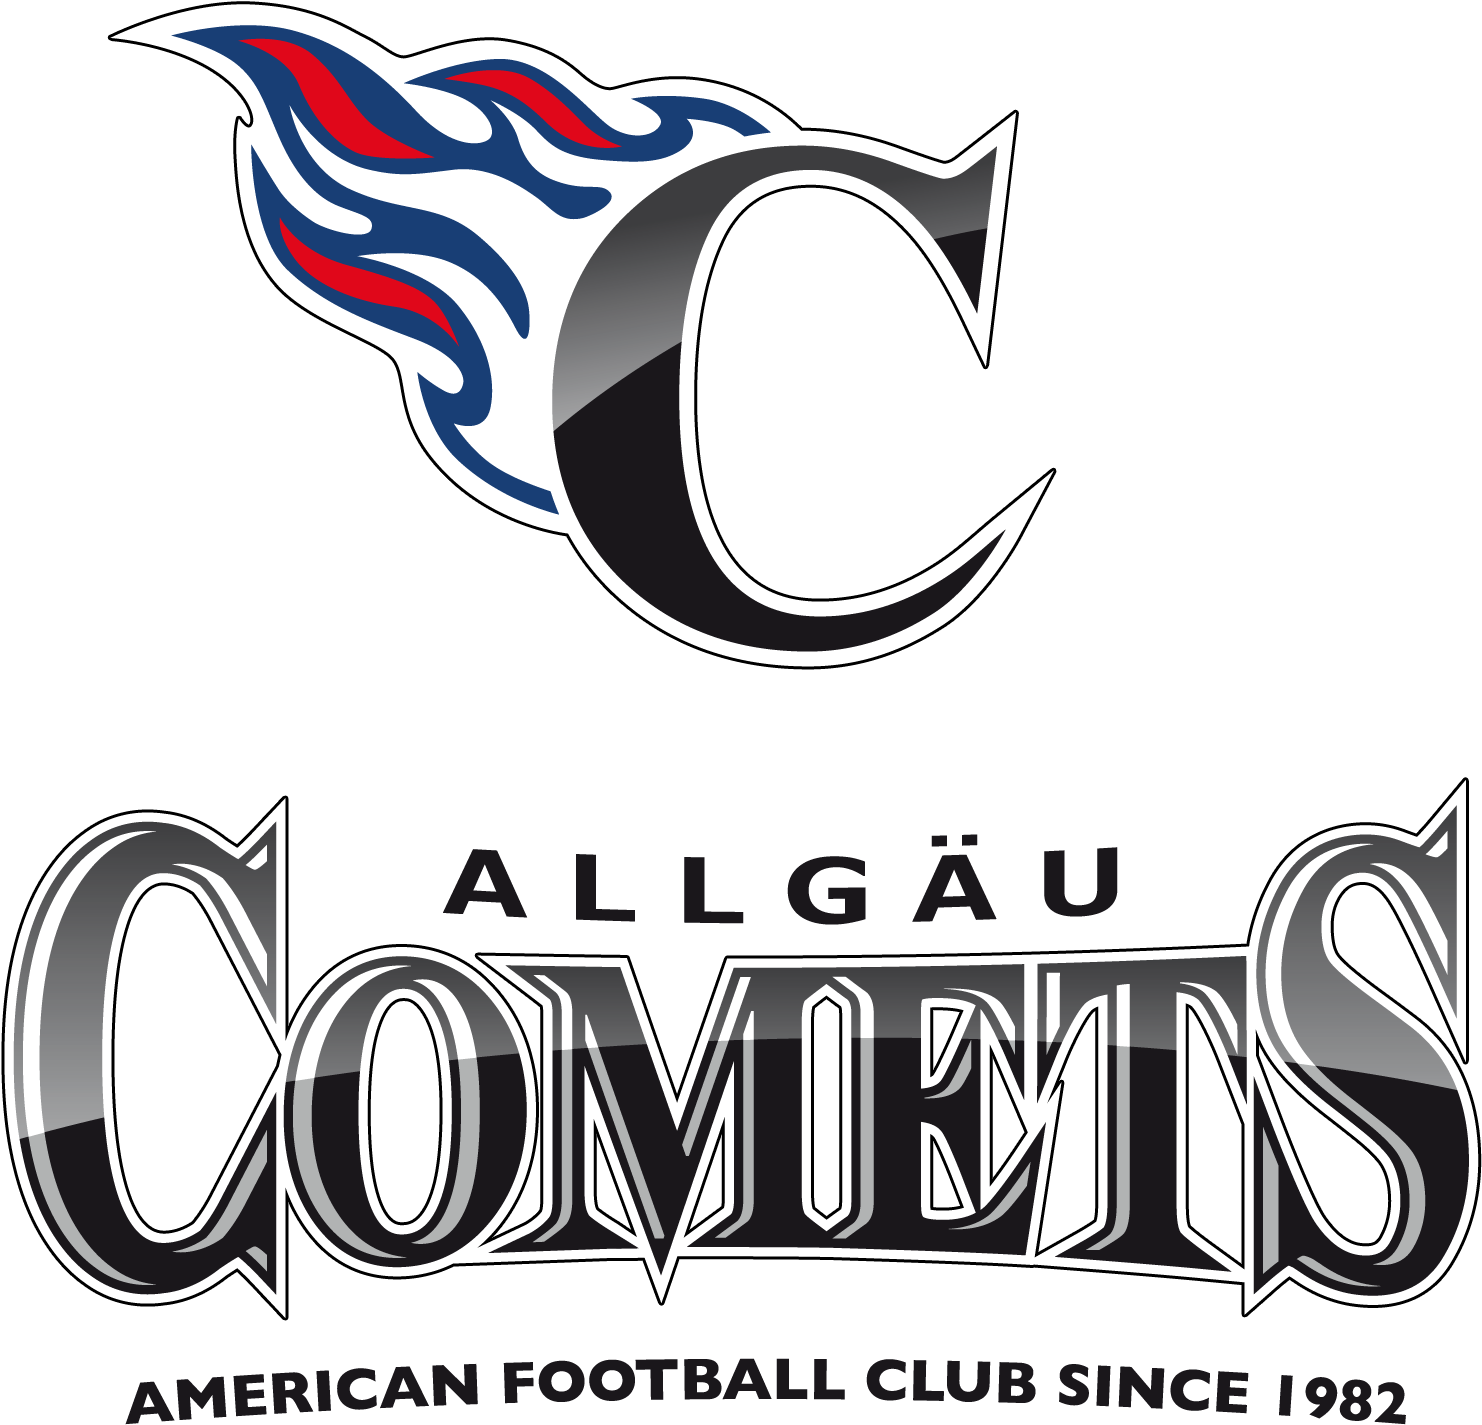 Allgaeu Comets American Football Club Logo PNG image